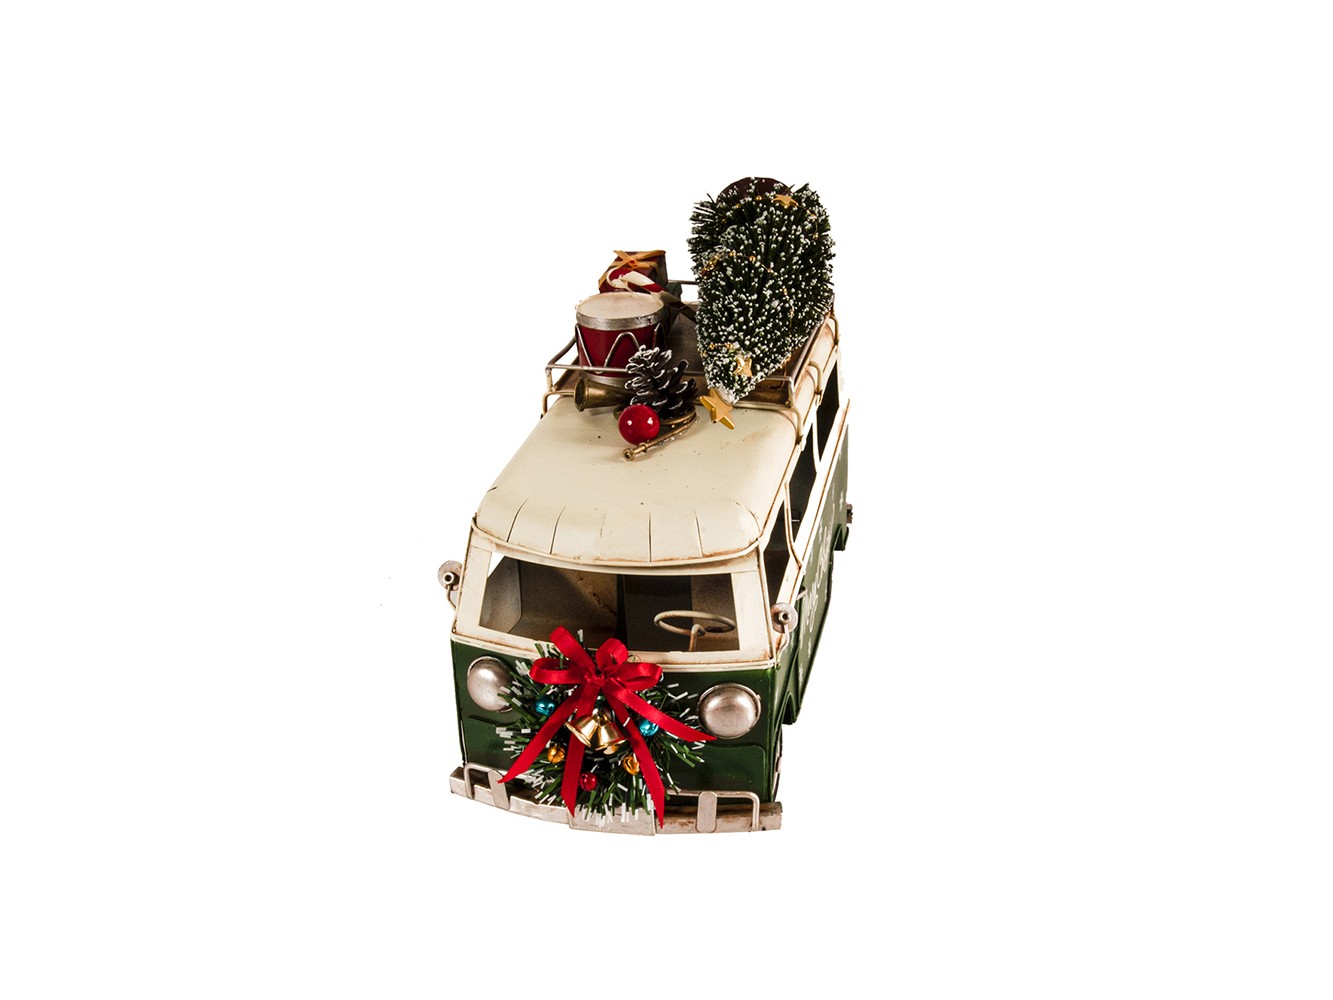 c1960s Volkswagen Christmas Bus Sculpture